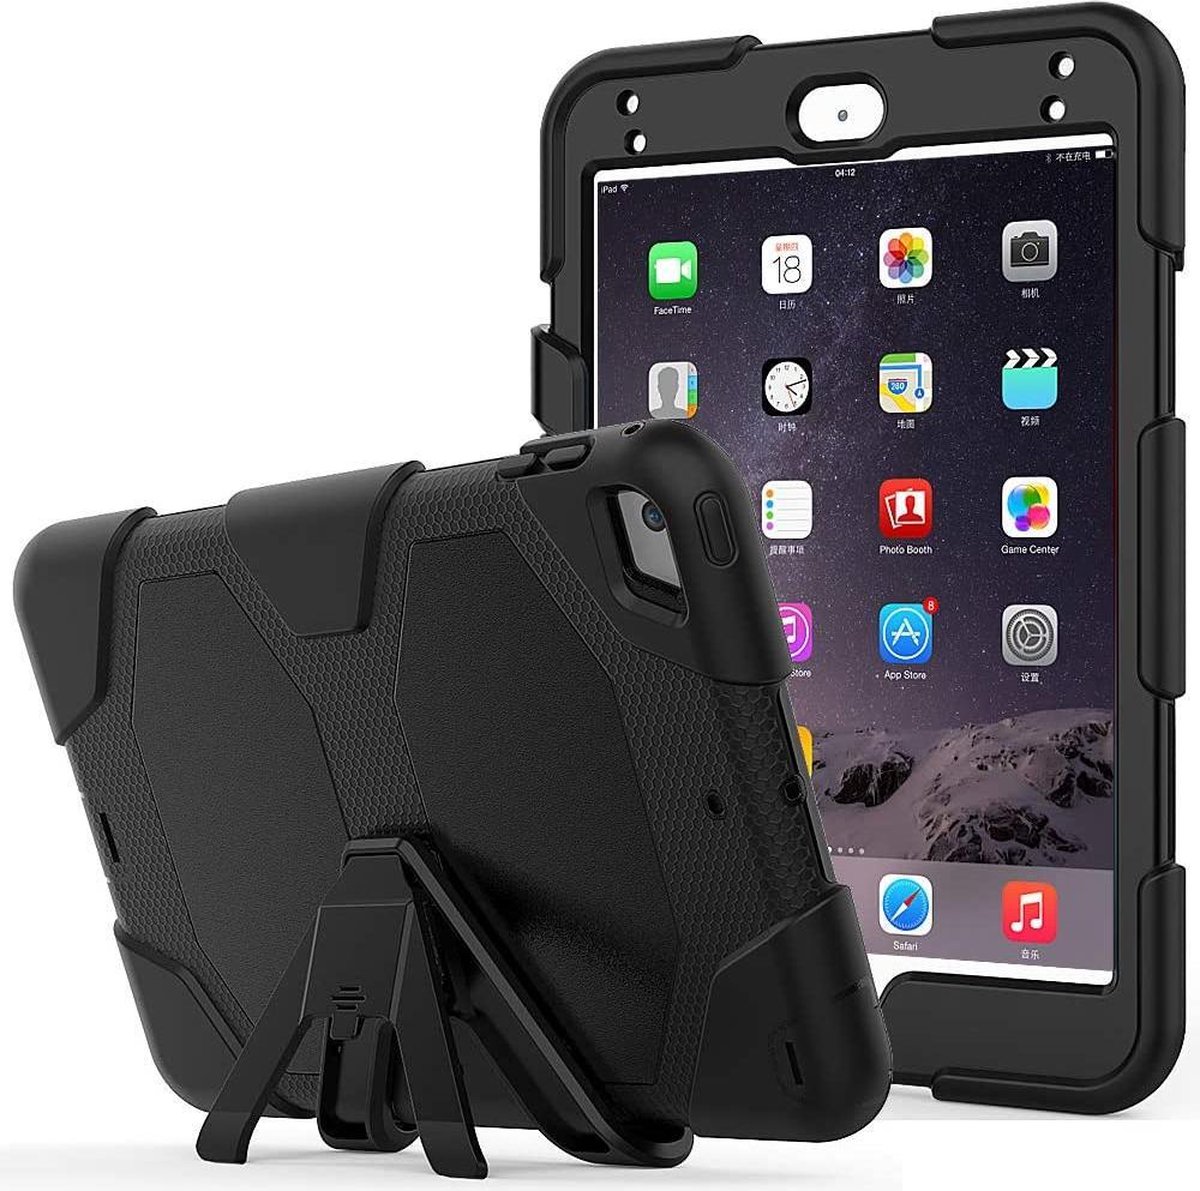 Extreme Robuuste Armor Case Hoesje Tablethoes Geschikt voor: iPad 2017 / iPad 2018 - Zwart